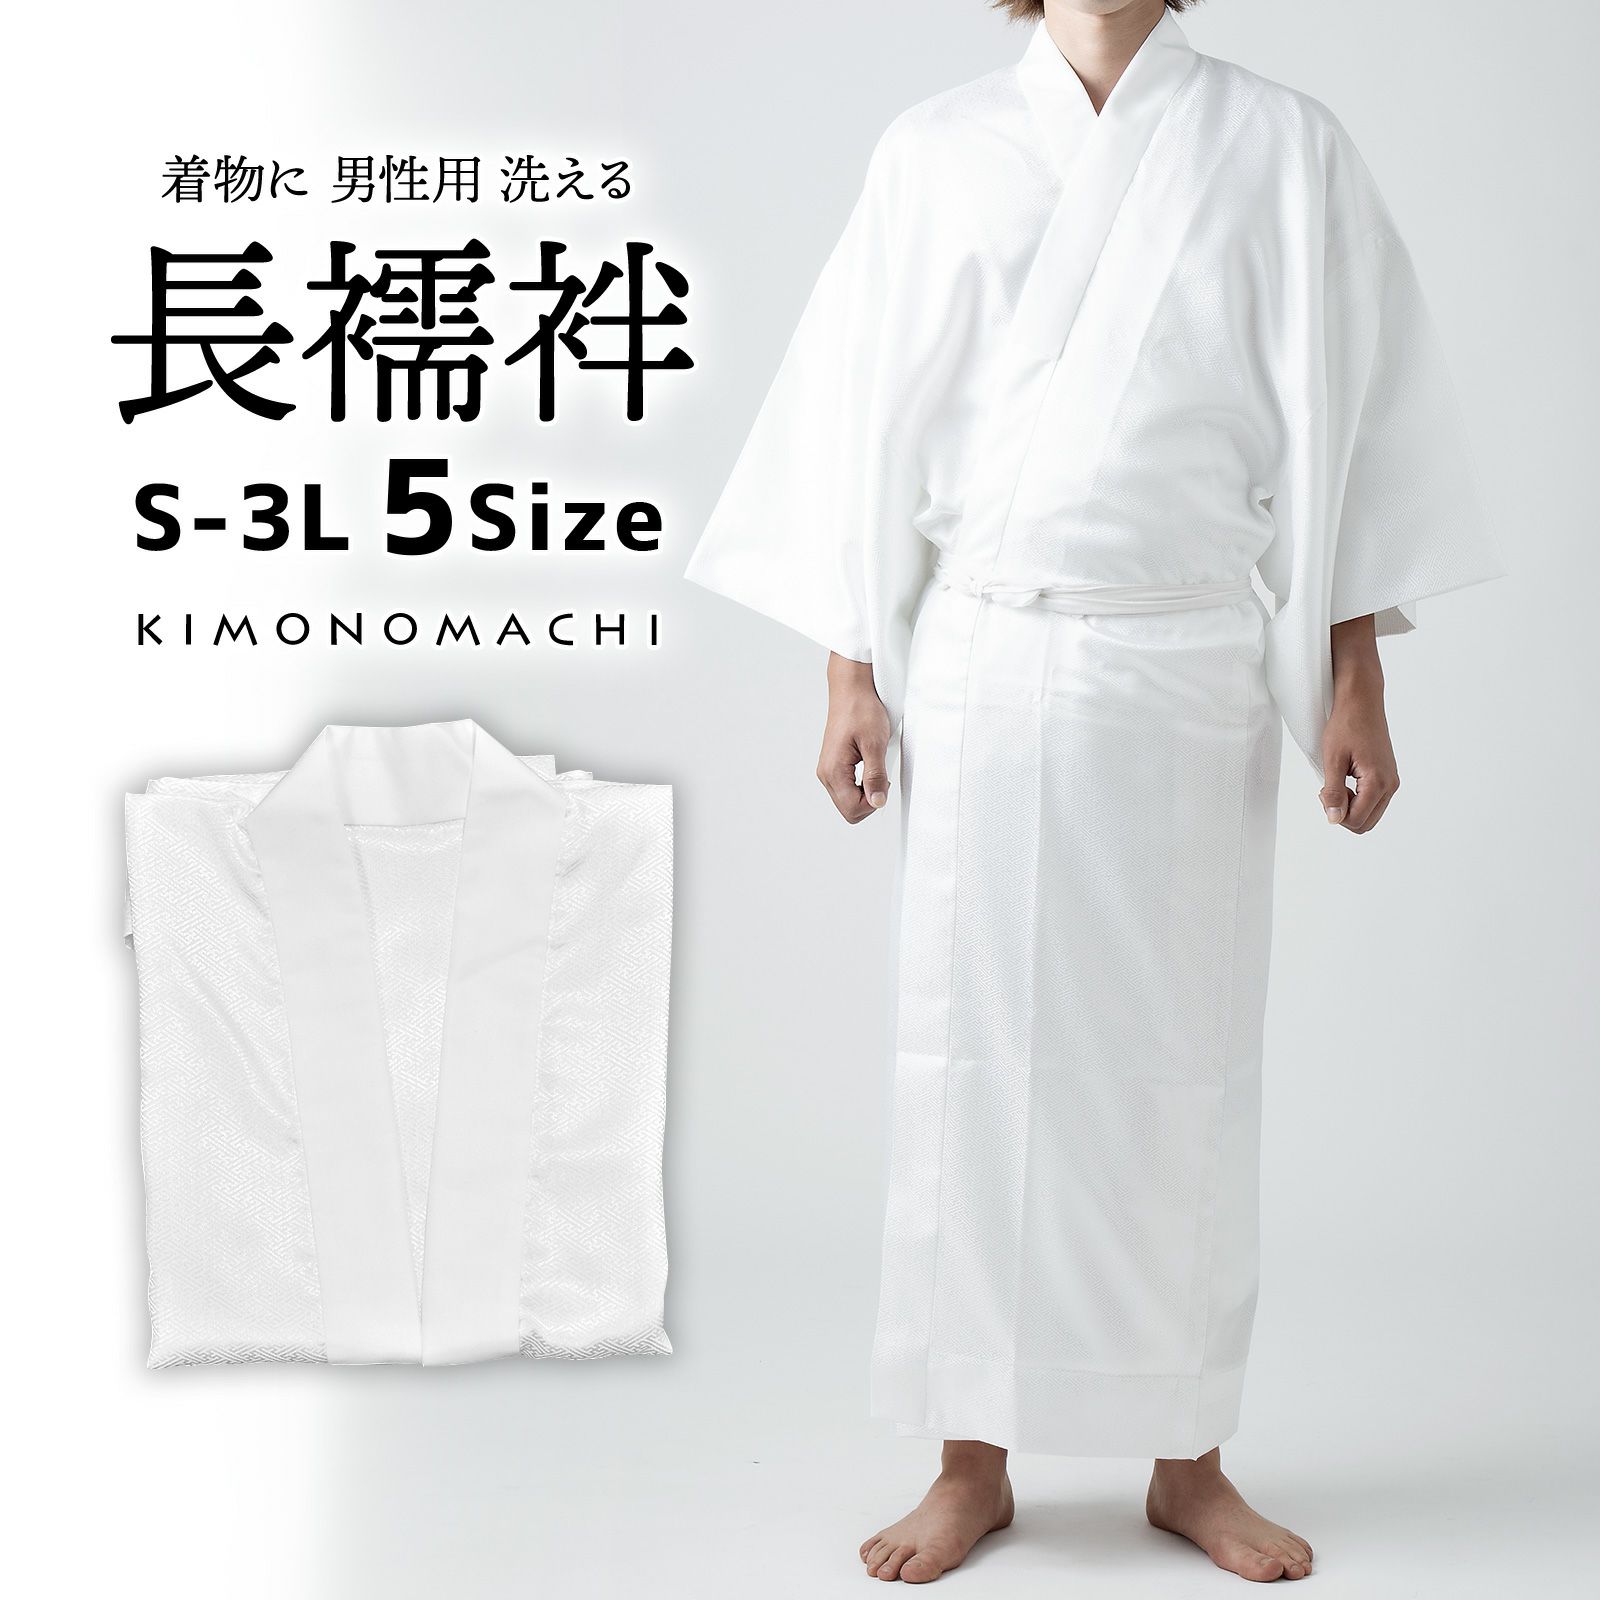 新品 男物 化繊 長襦袢 夏物 夏用 白の絽 選べる3サイズ M〜LL あす楽 